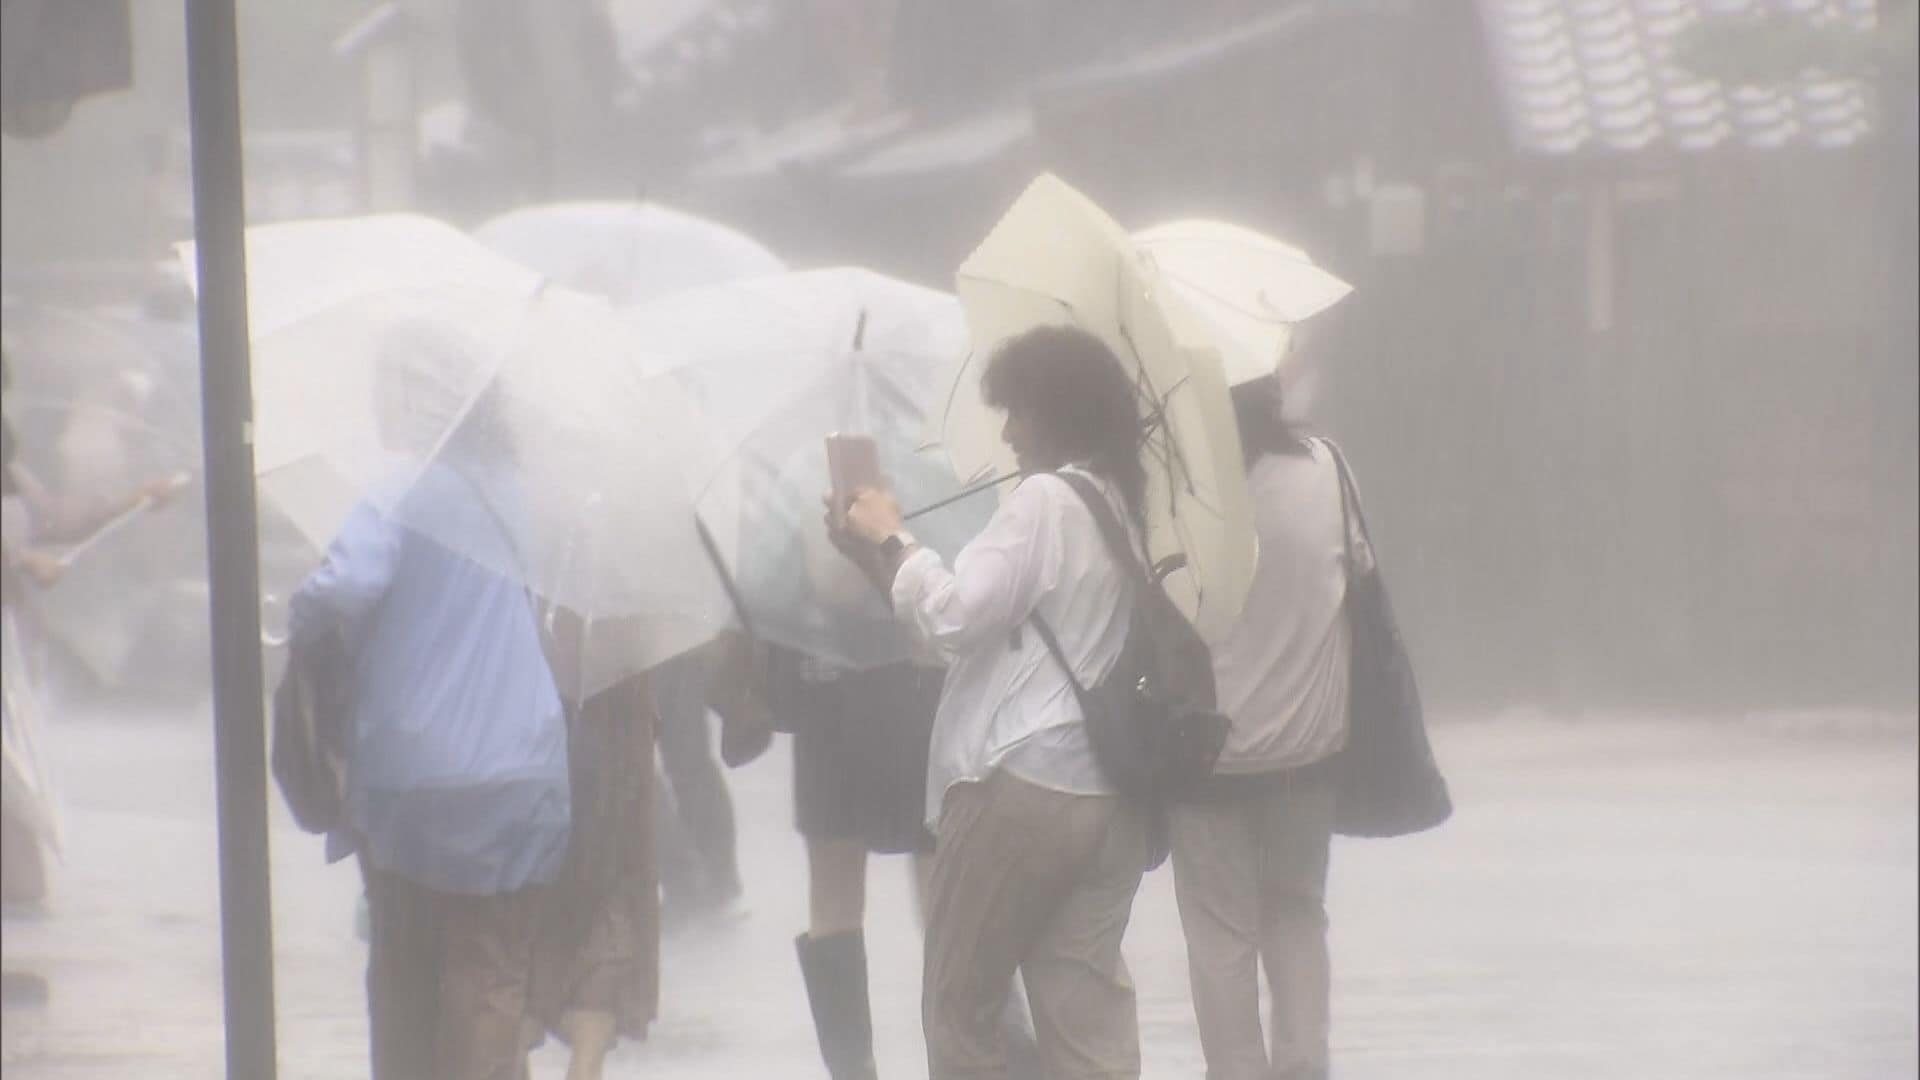 下呂市等では1時間雨量が5月最大に…愛知・岐阜で『線状降水帯』発生の恐れ 1年前被害の地域でも備え急ぐ